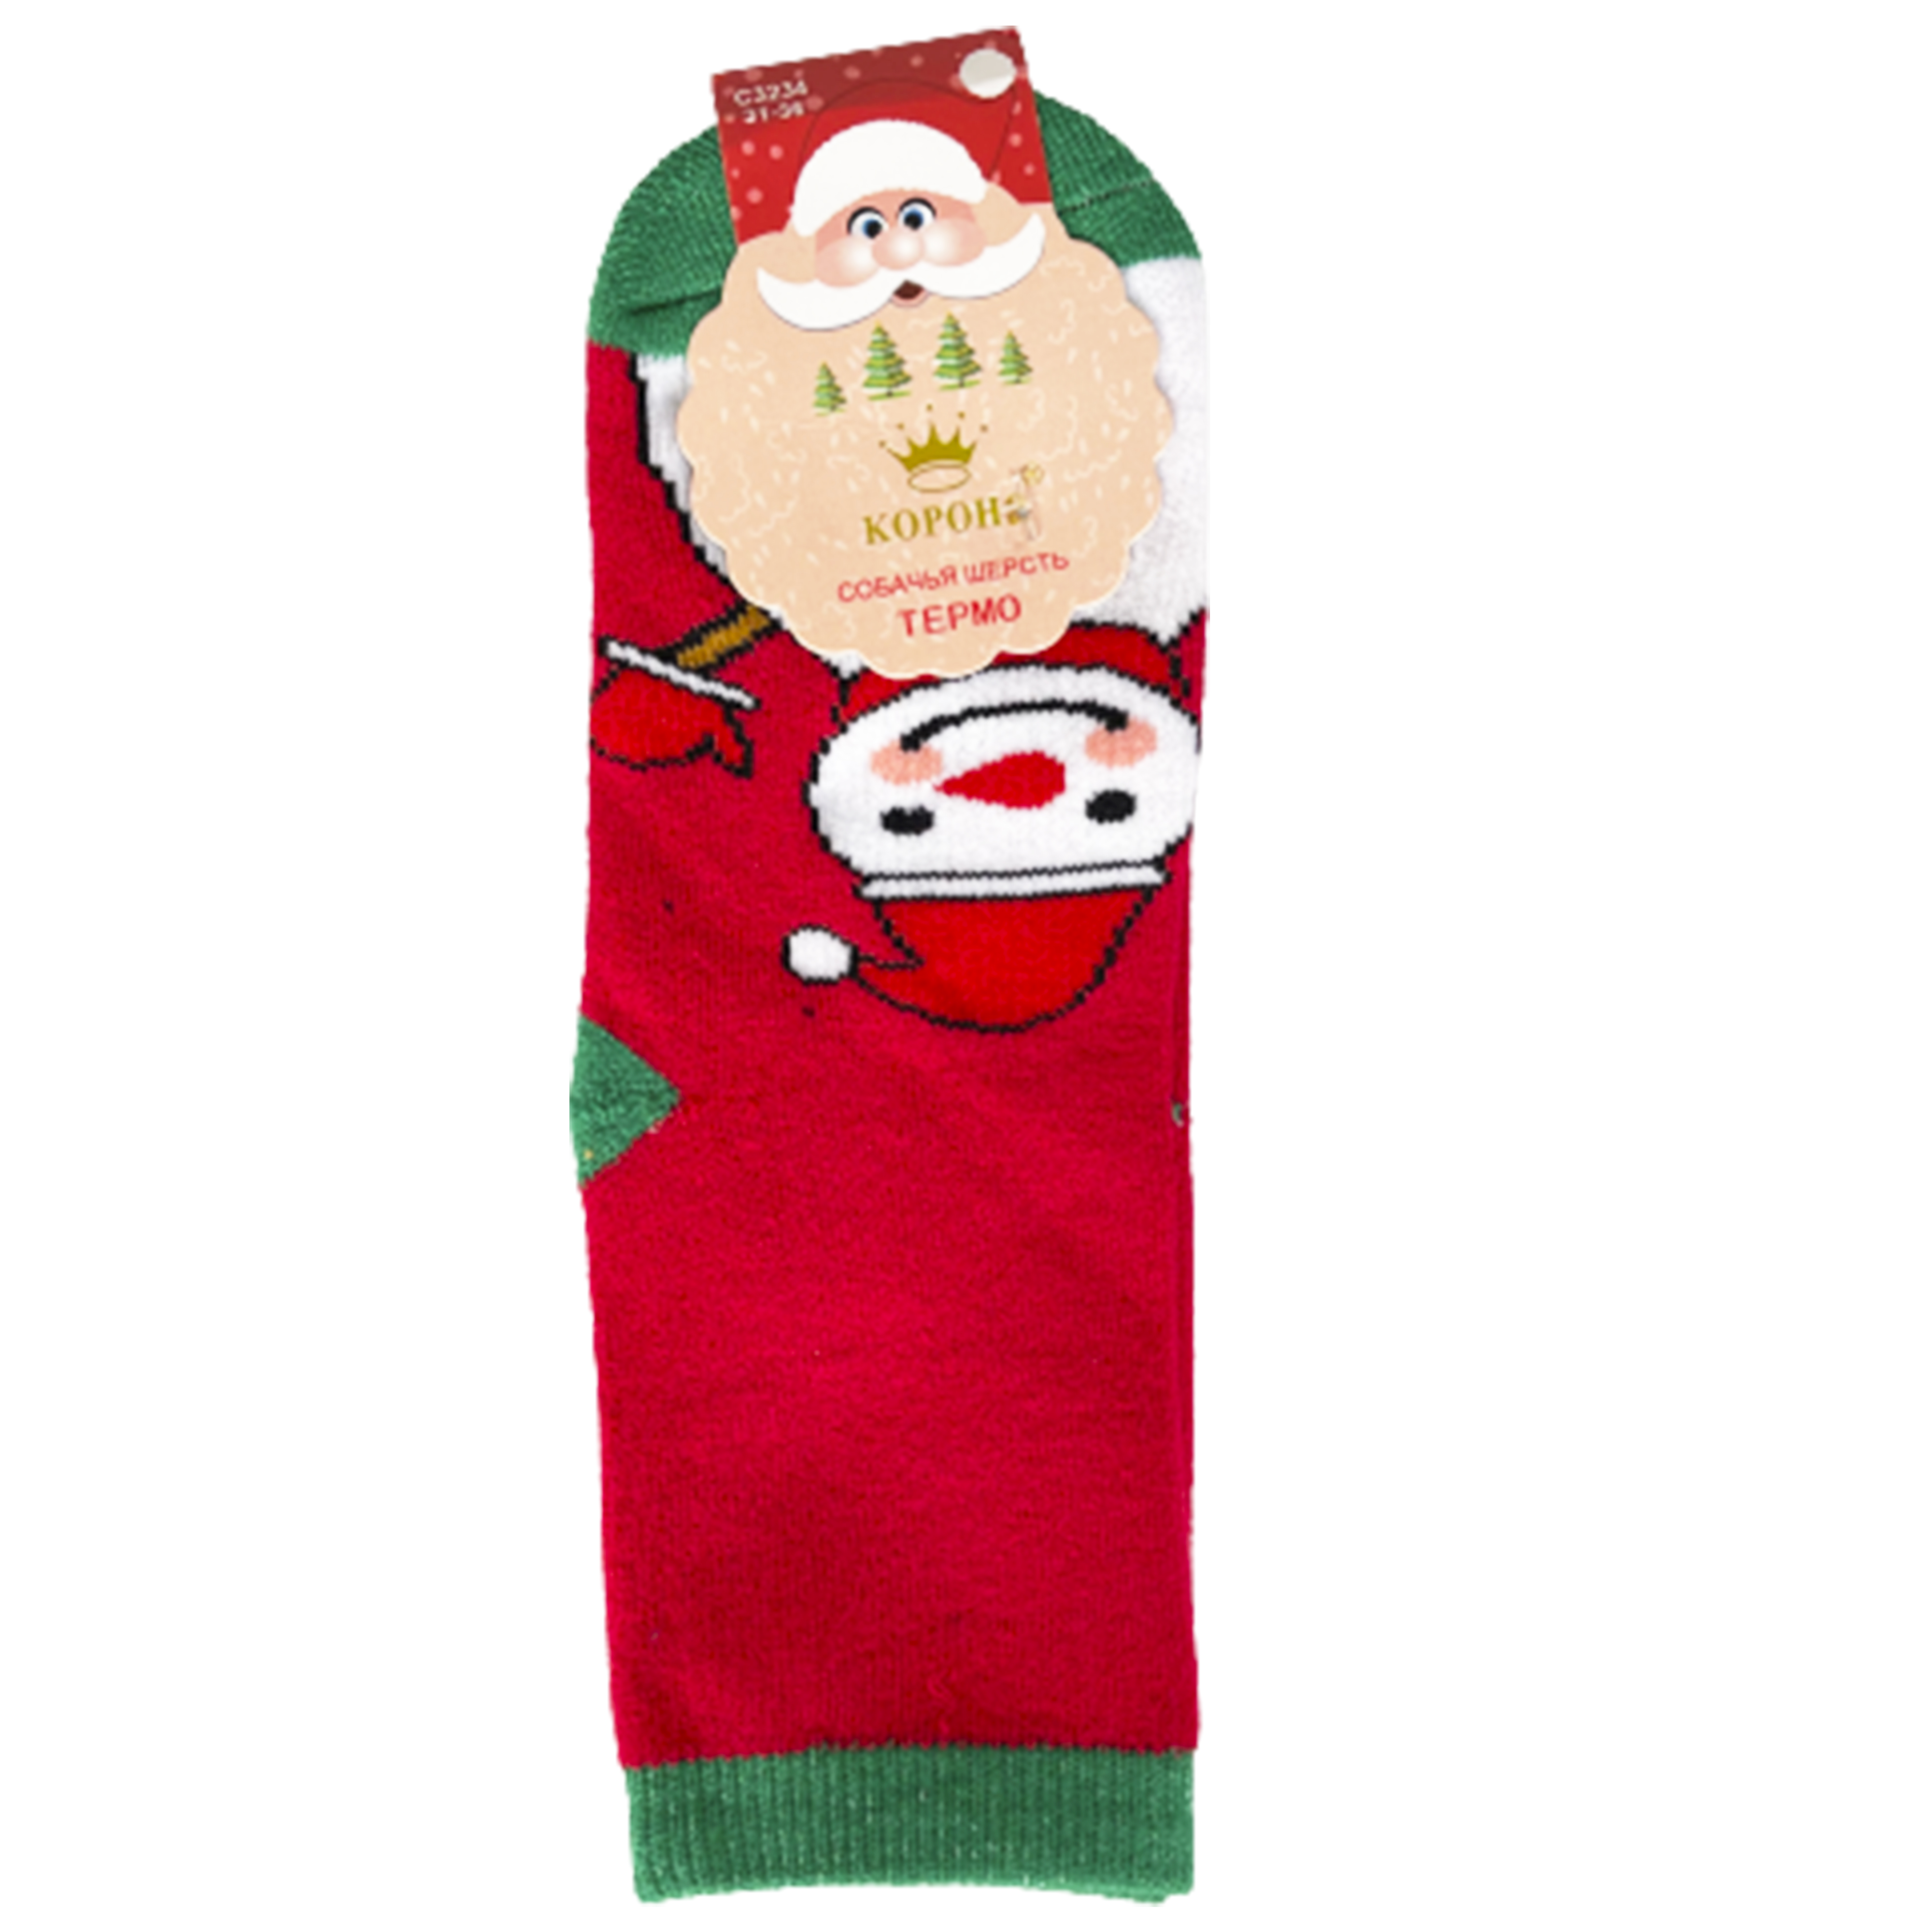 Шкарпетки TM Корона C3234 махрові, сніговик, червоні, р. 31-36  large popup